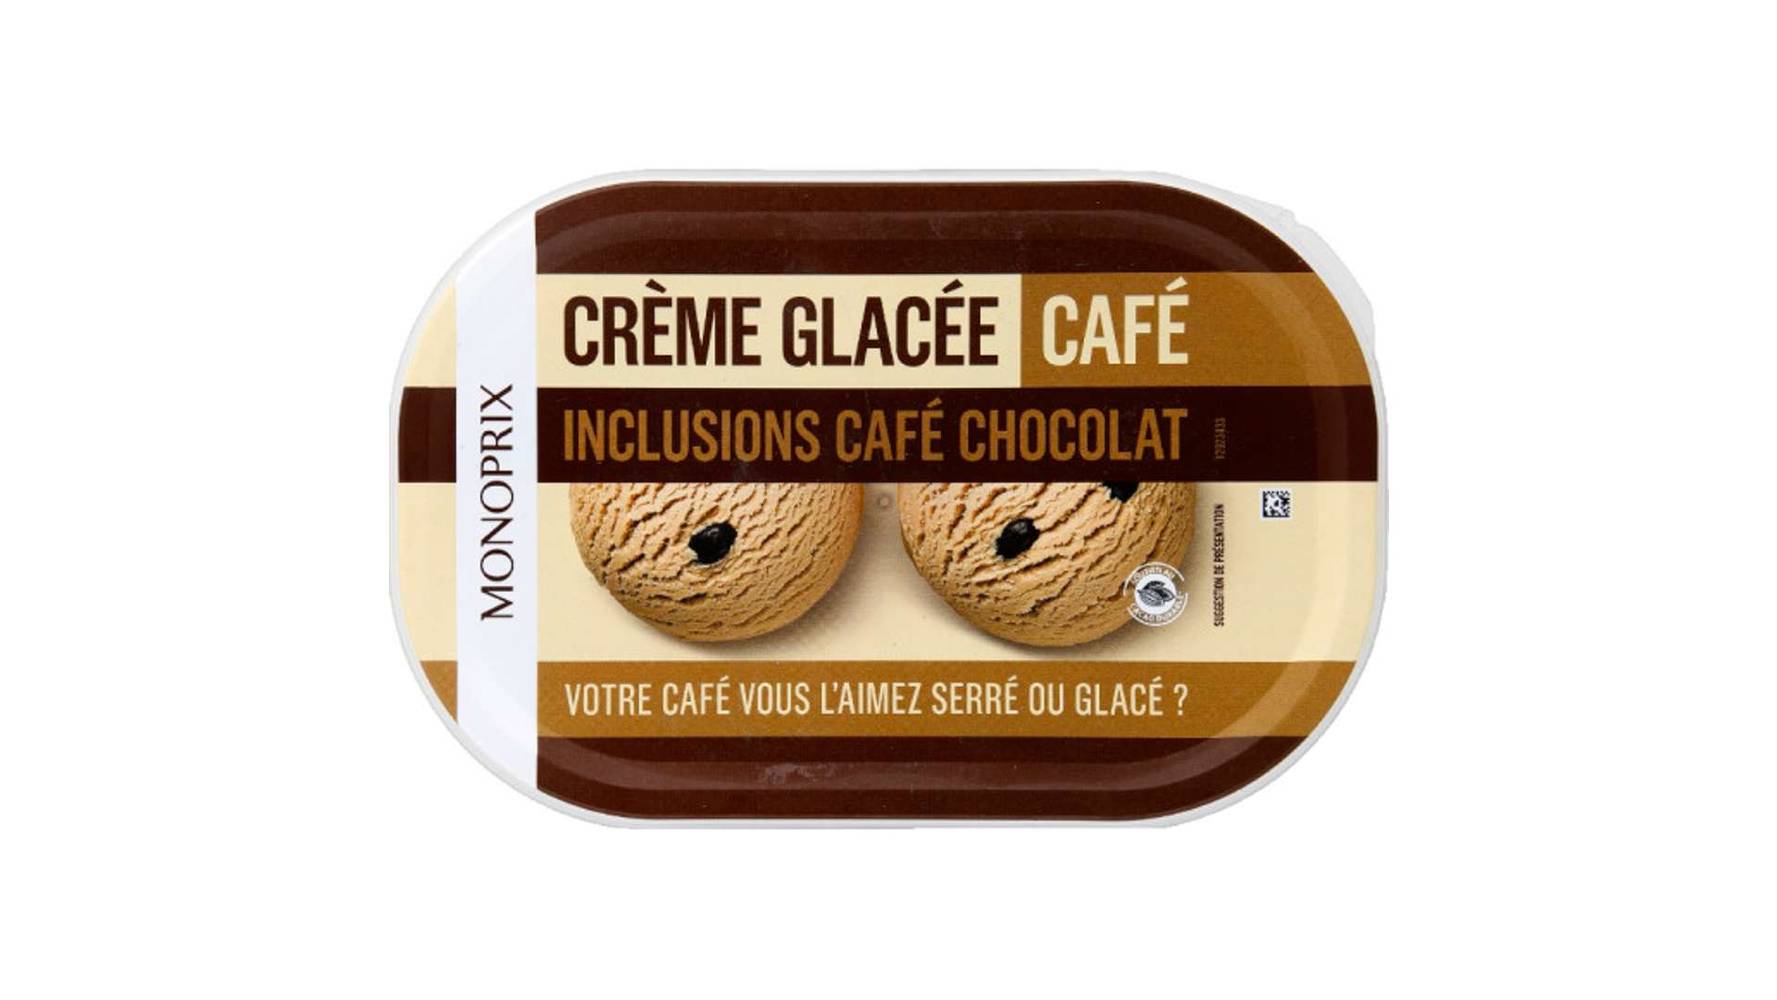 Monoprix Crème glacée au café, inclusions café chocolat Le pot de 500g